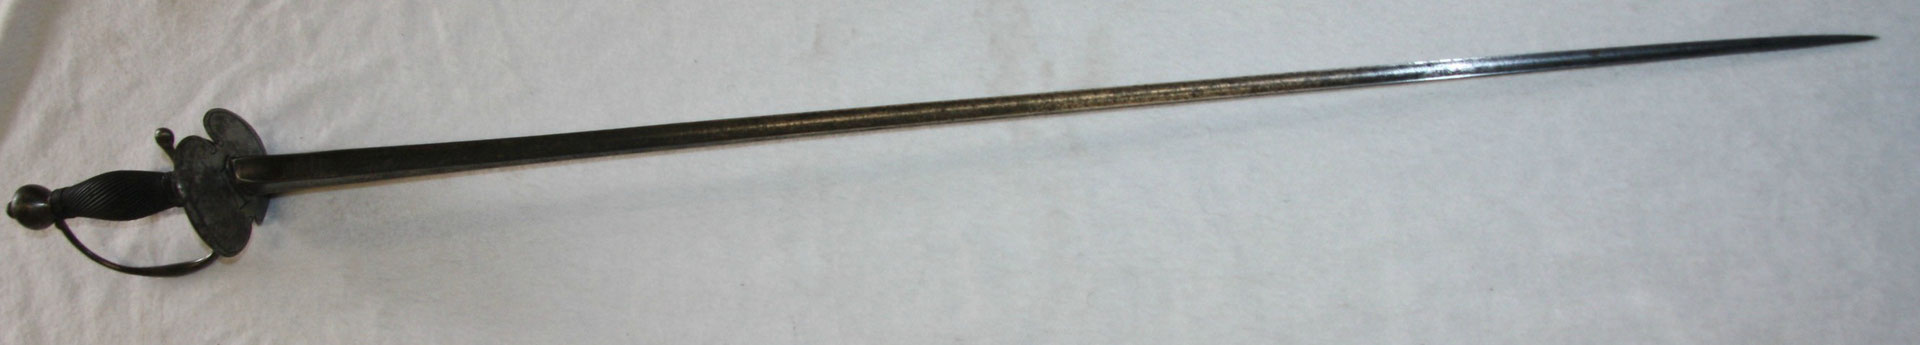 épée sergent modèle 1767